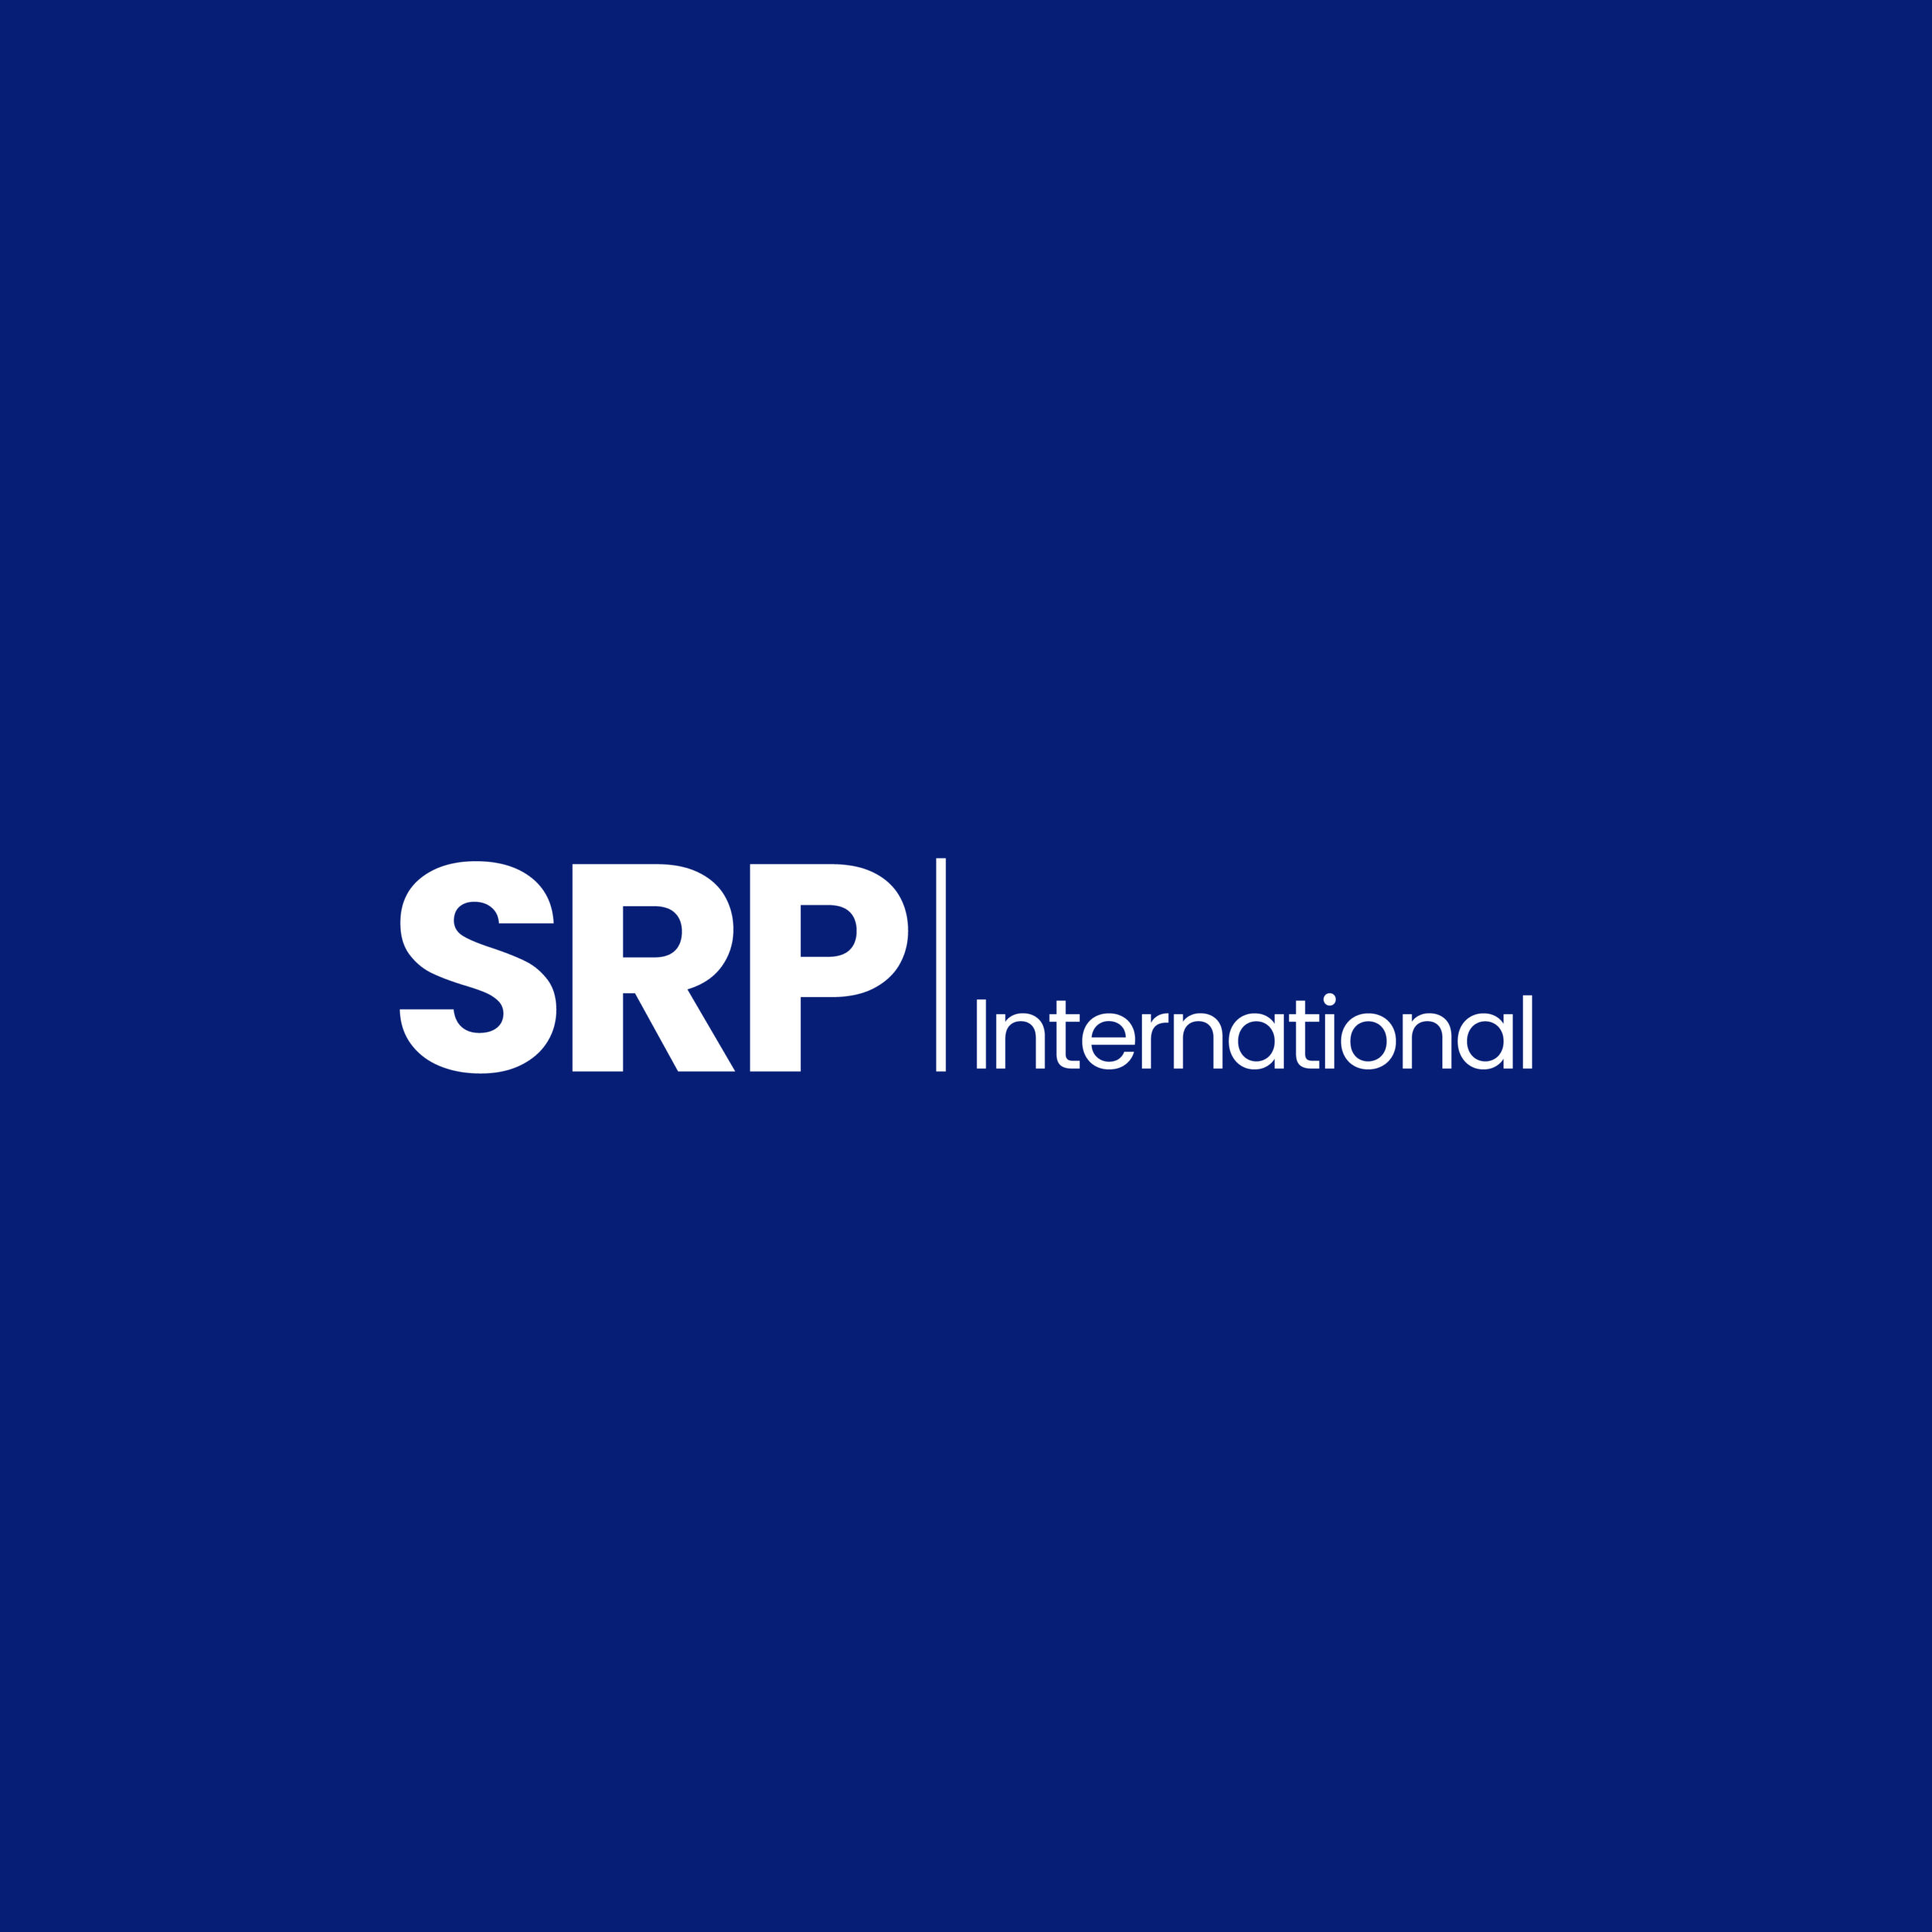 Srp Letter Logo Design White Background Stock Vector (Royalty Free)  2217267583 | Shutterstock